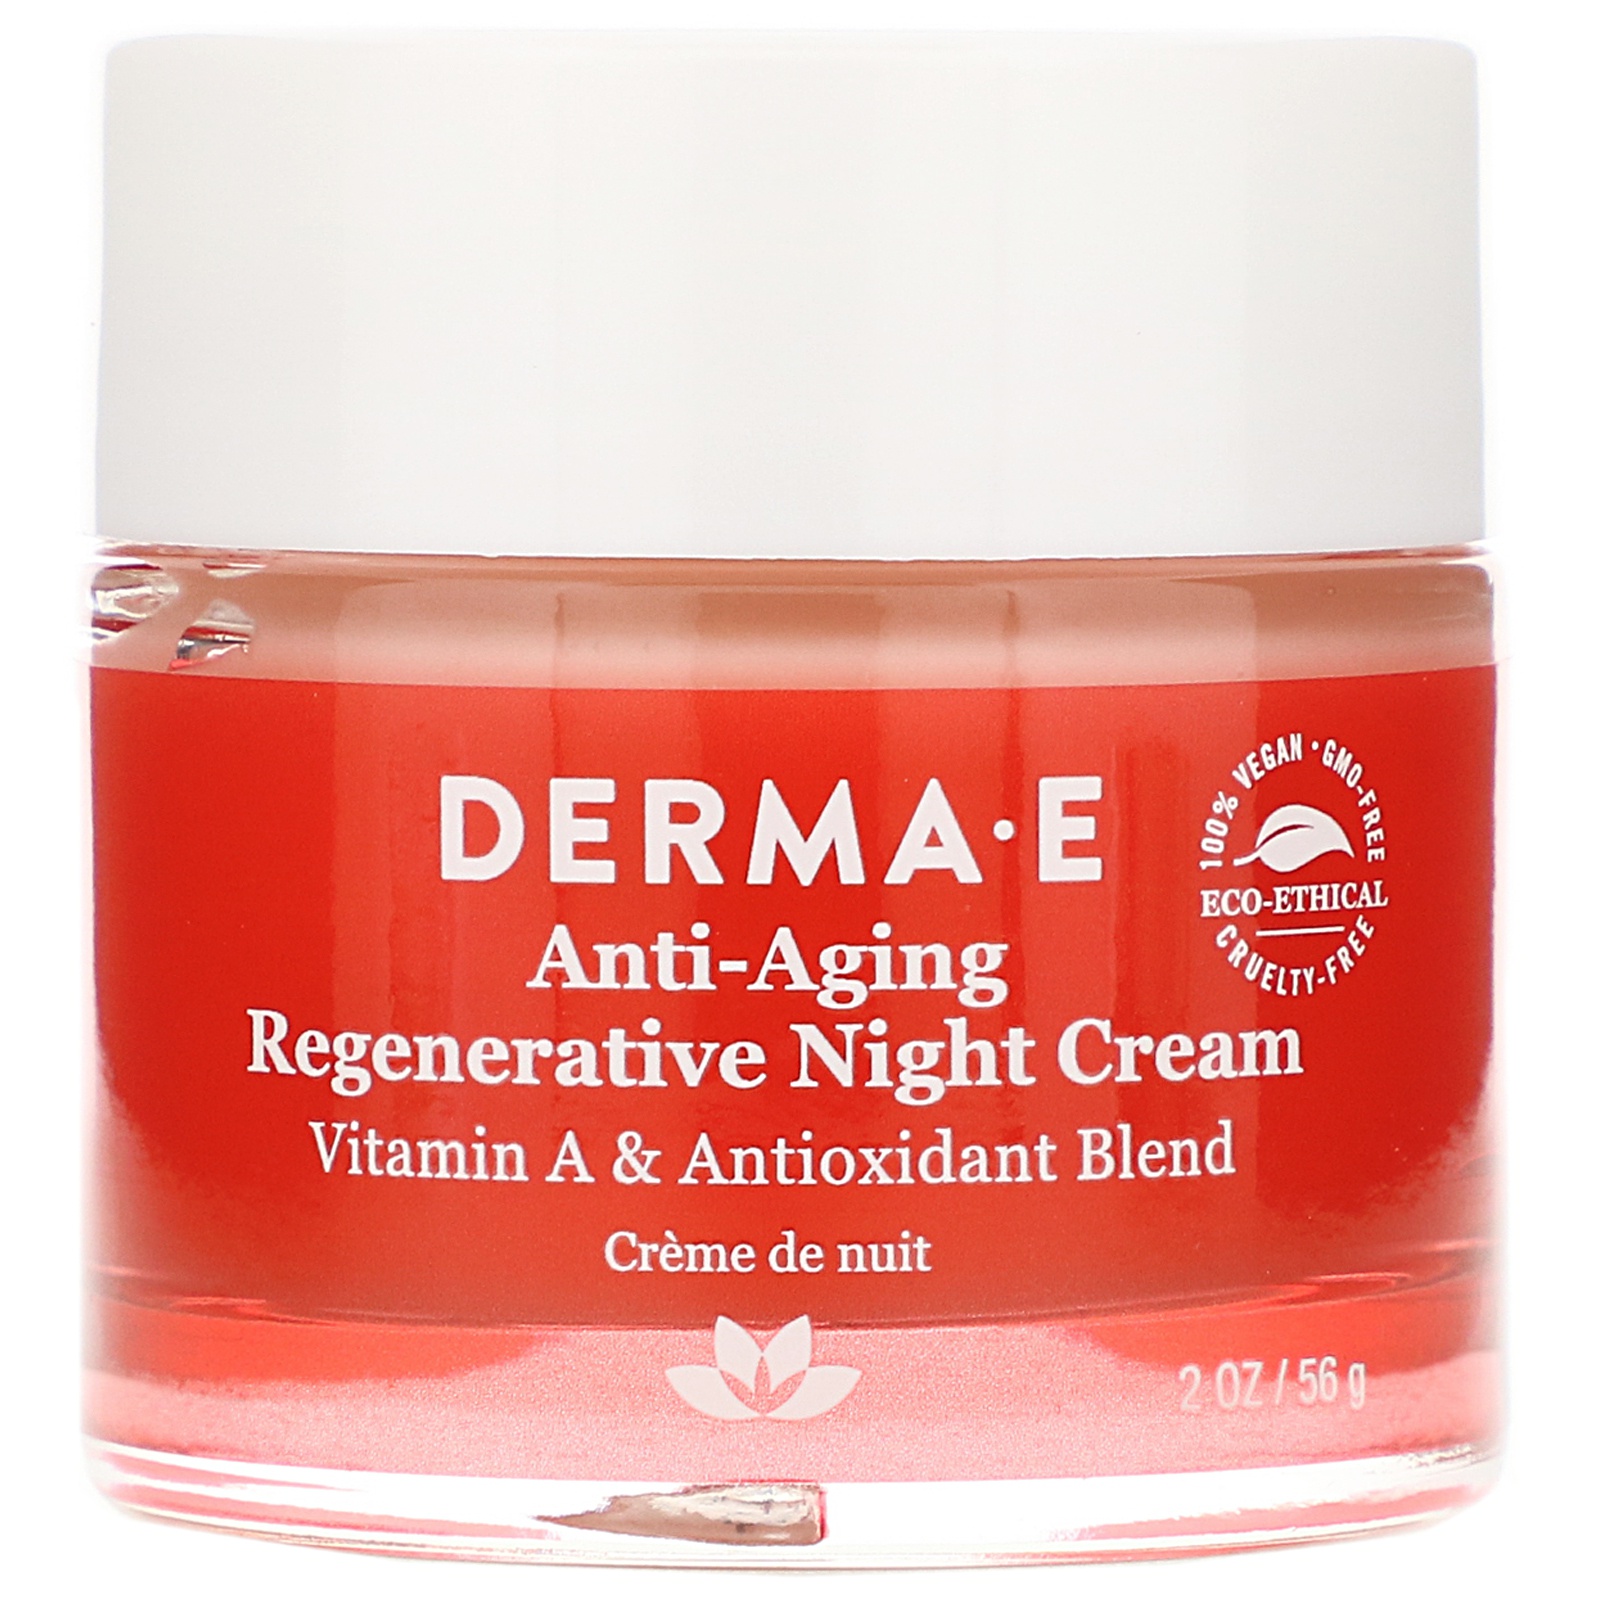 Derma E Antiaging Regenerative Night Cream ingredients (Explained)